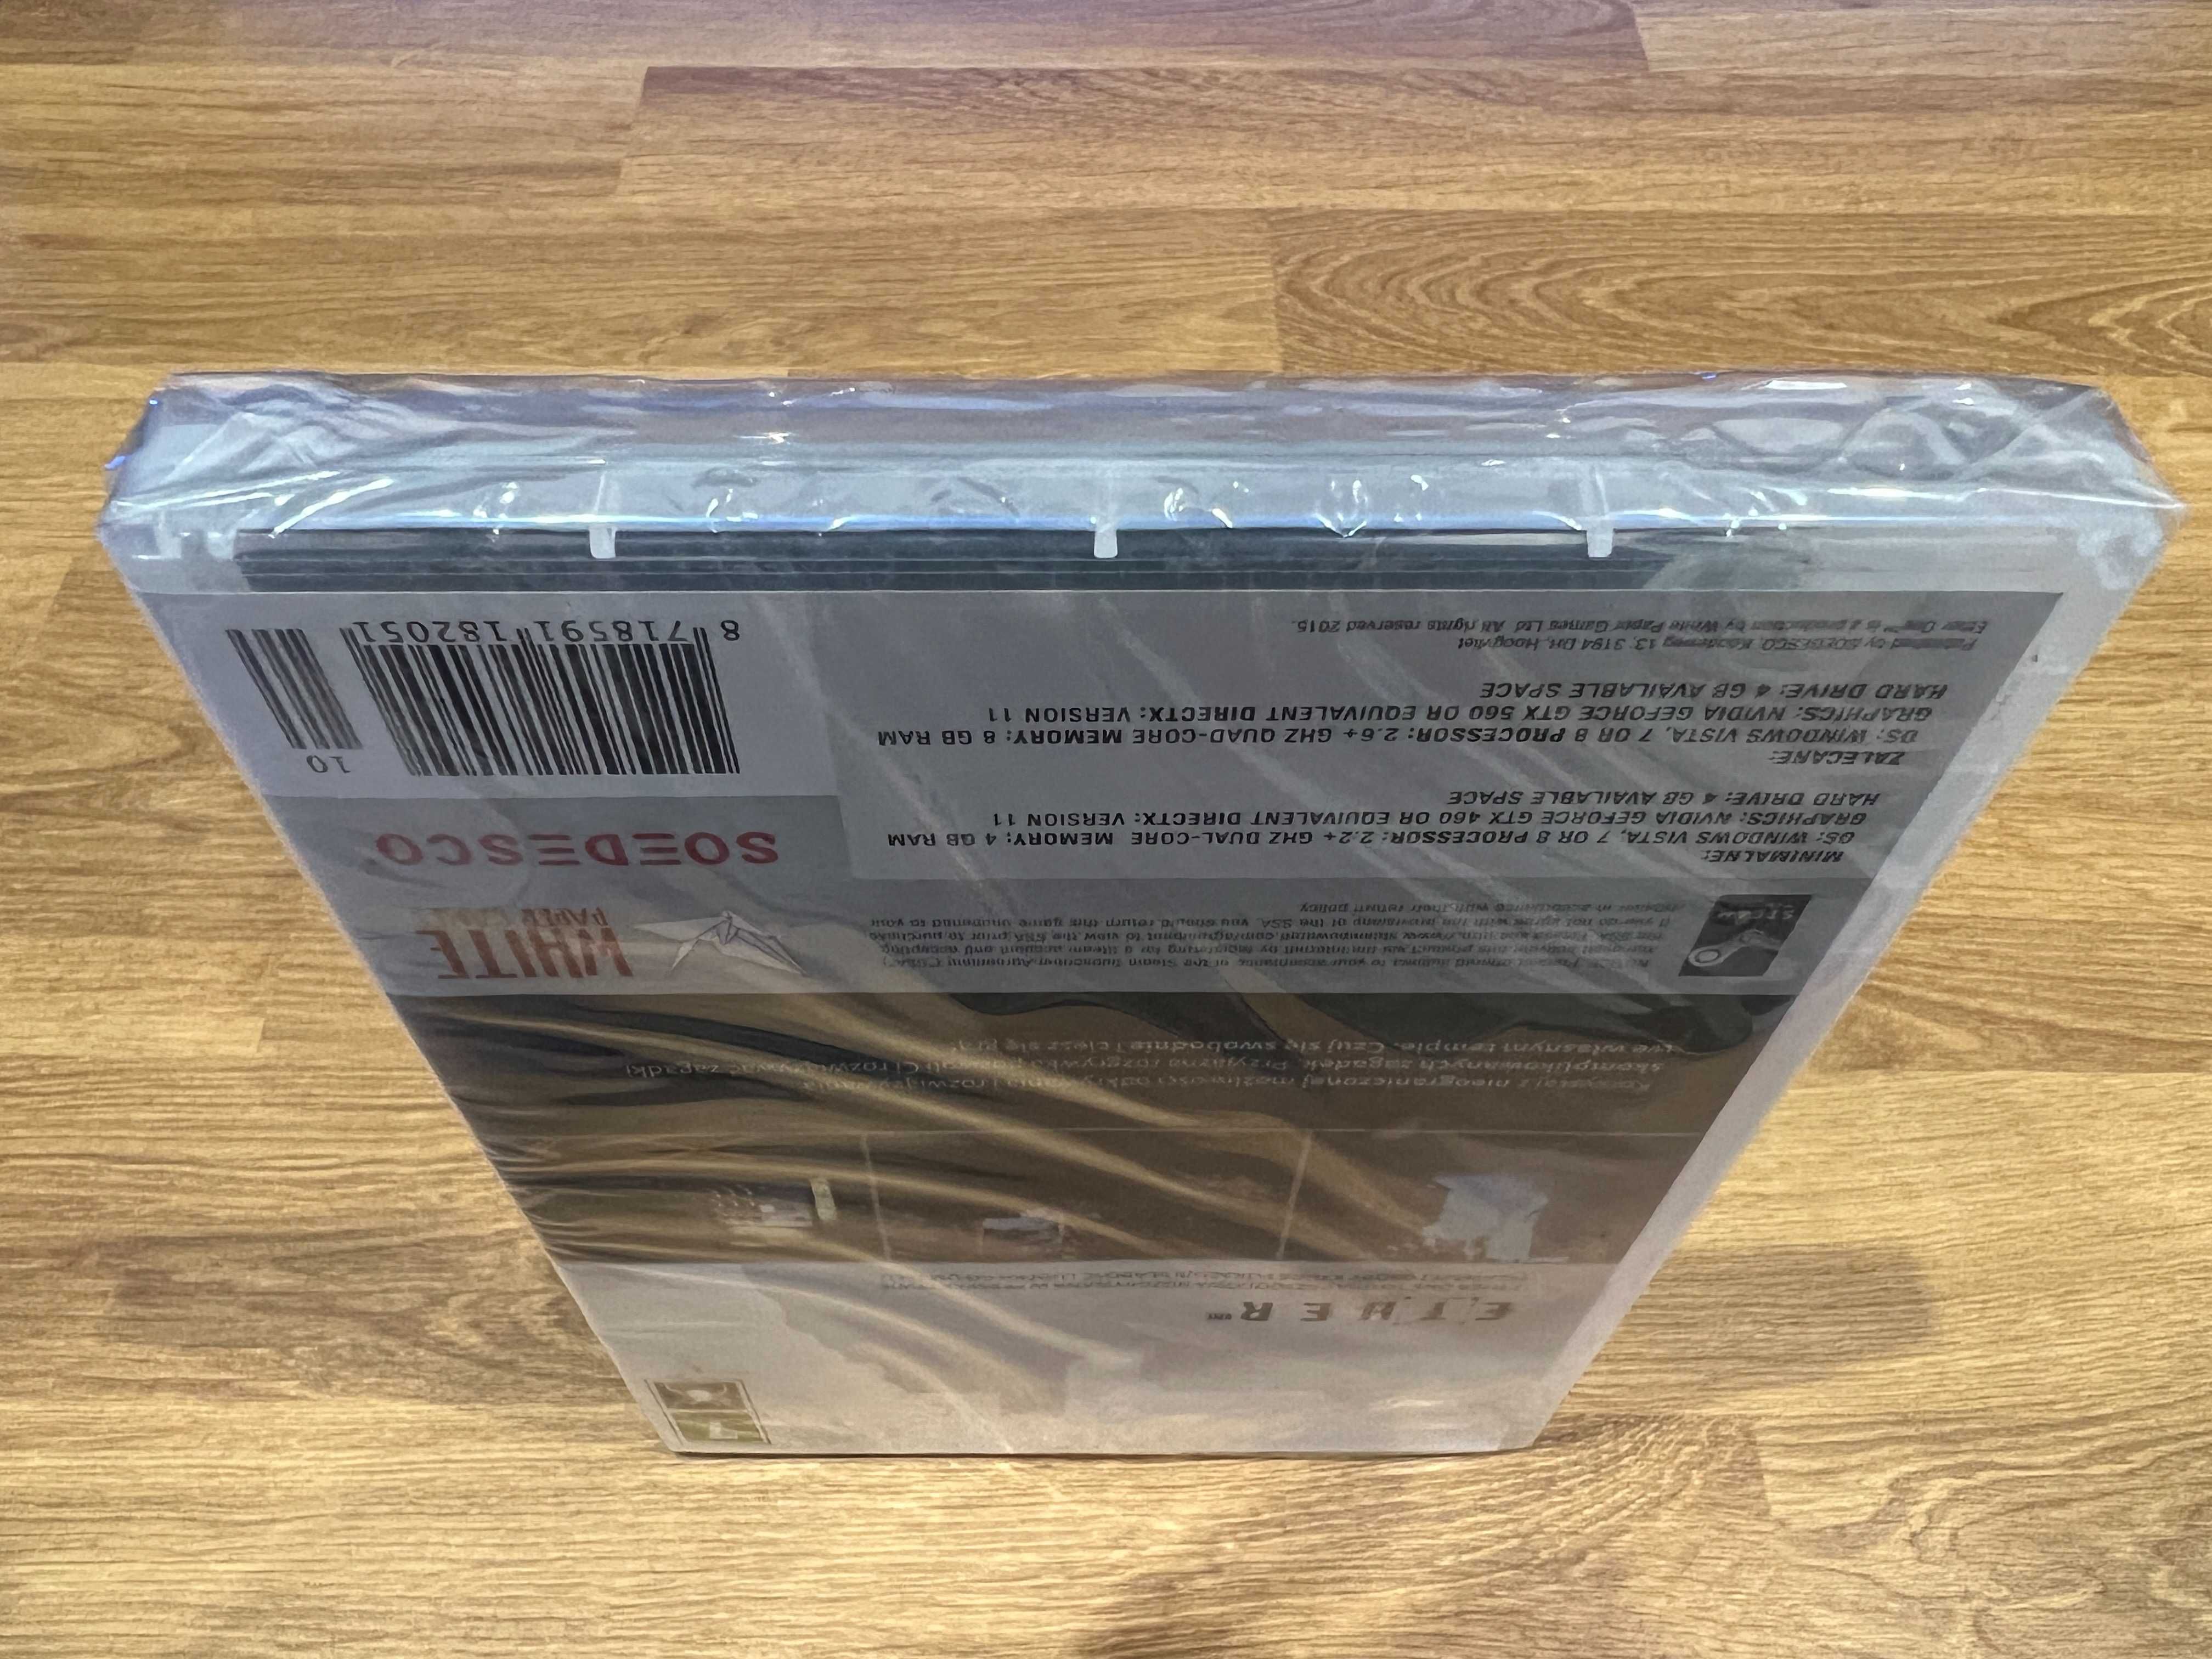 Ether One gra NOWA FOLIA (PC PL 2015) DVD BOX premierowe wydanie